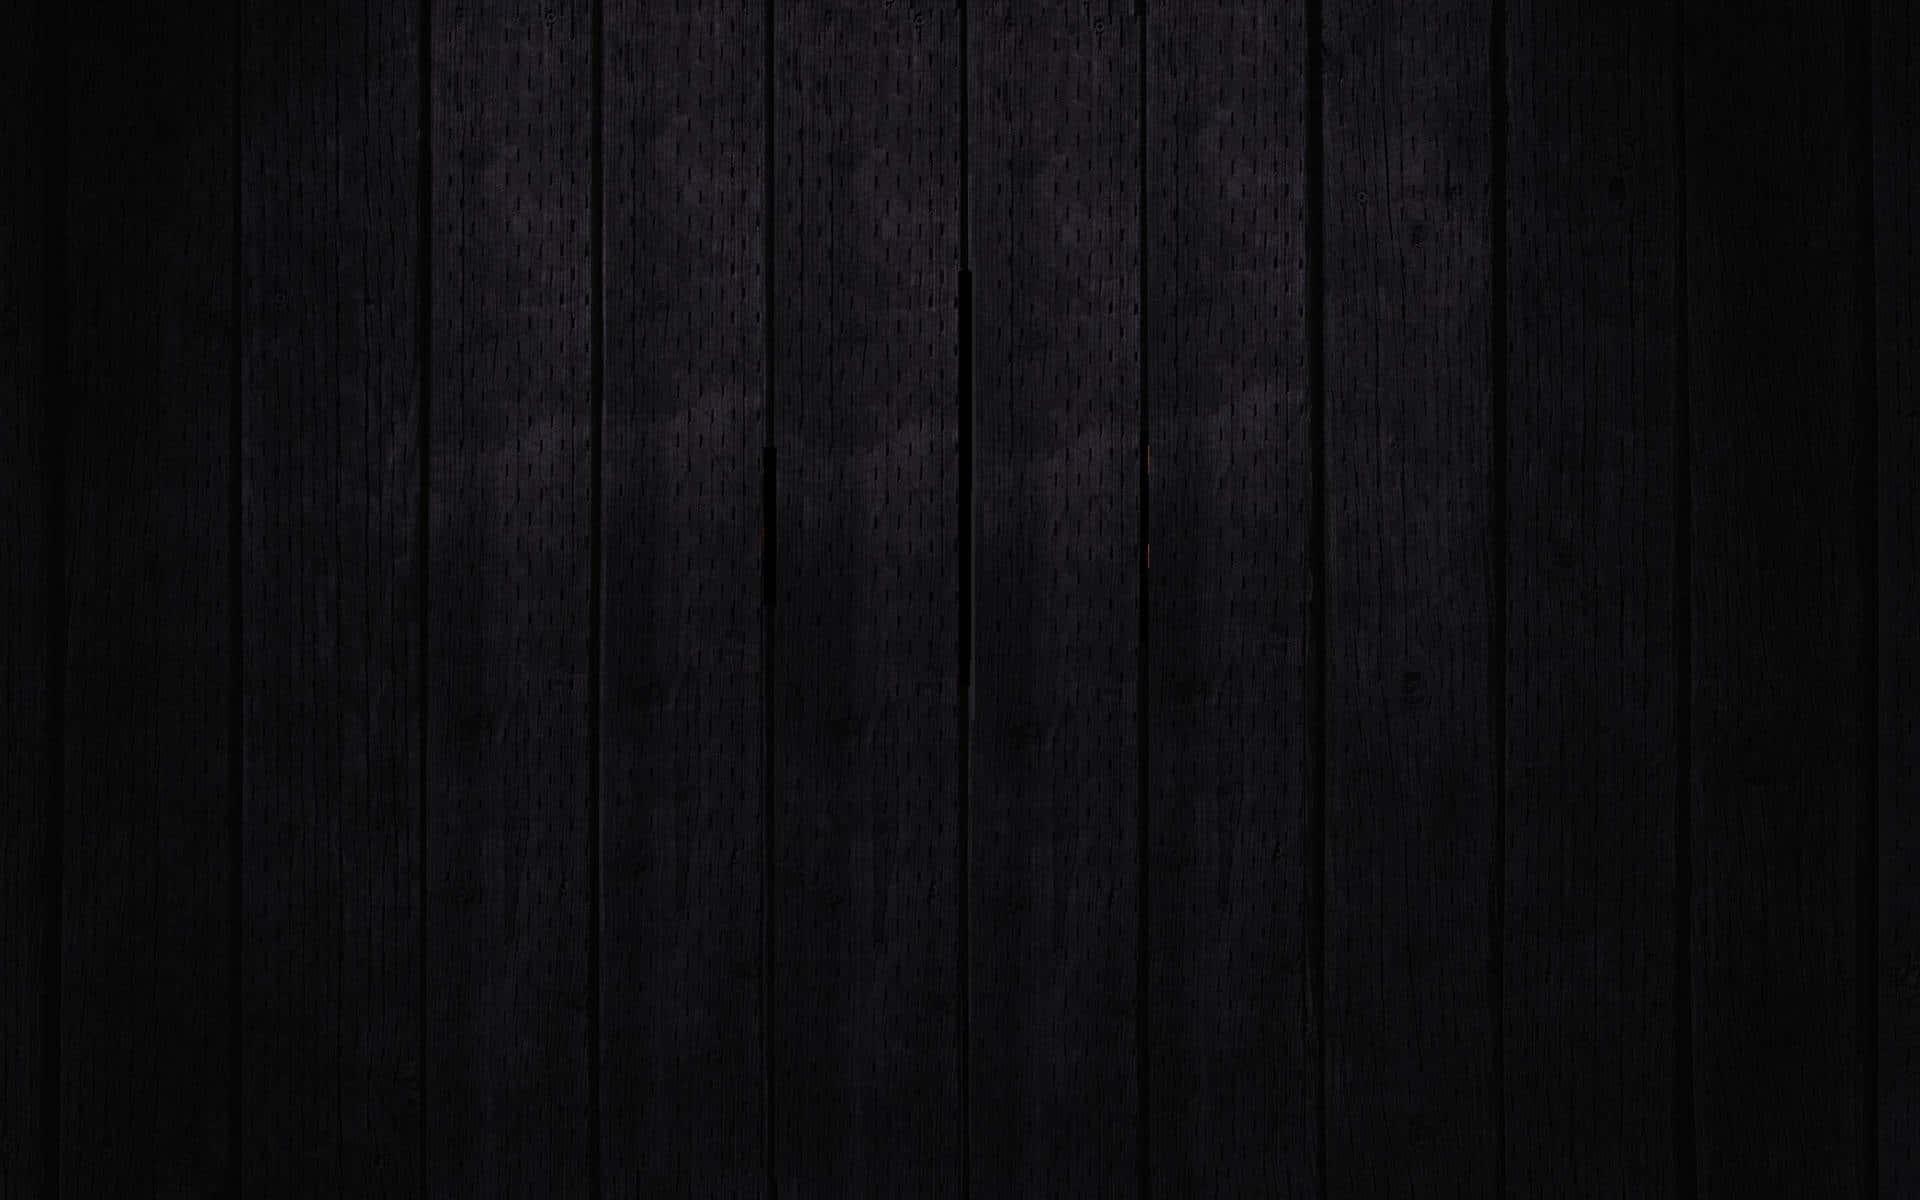 Dark Wooden Planks Texture Background